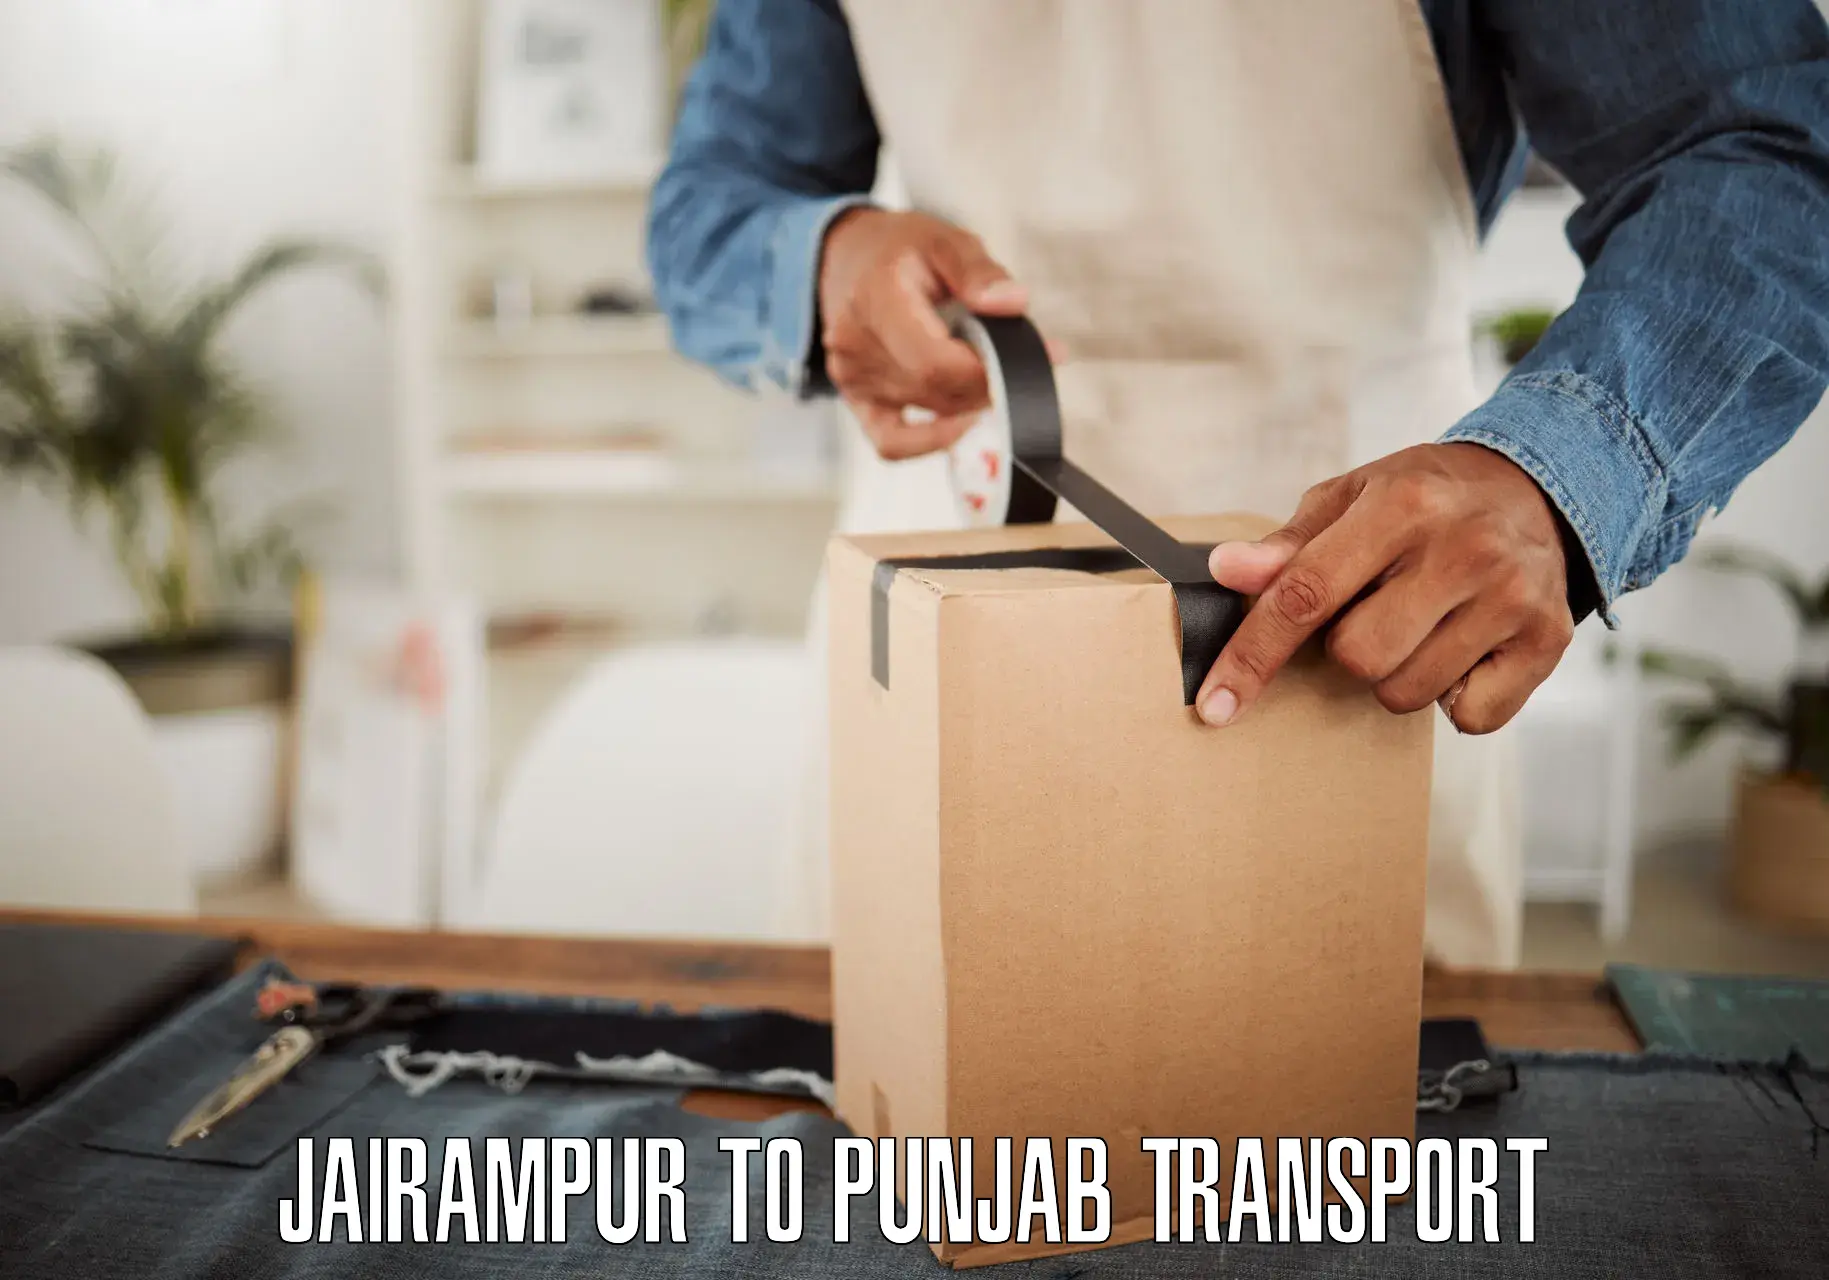 Furniture transport service Jairampur to Nangal